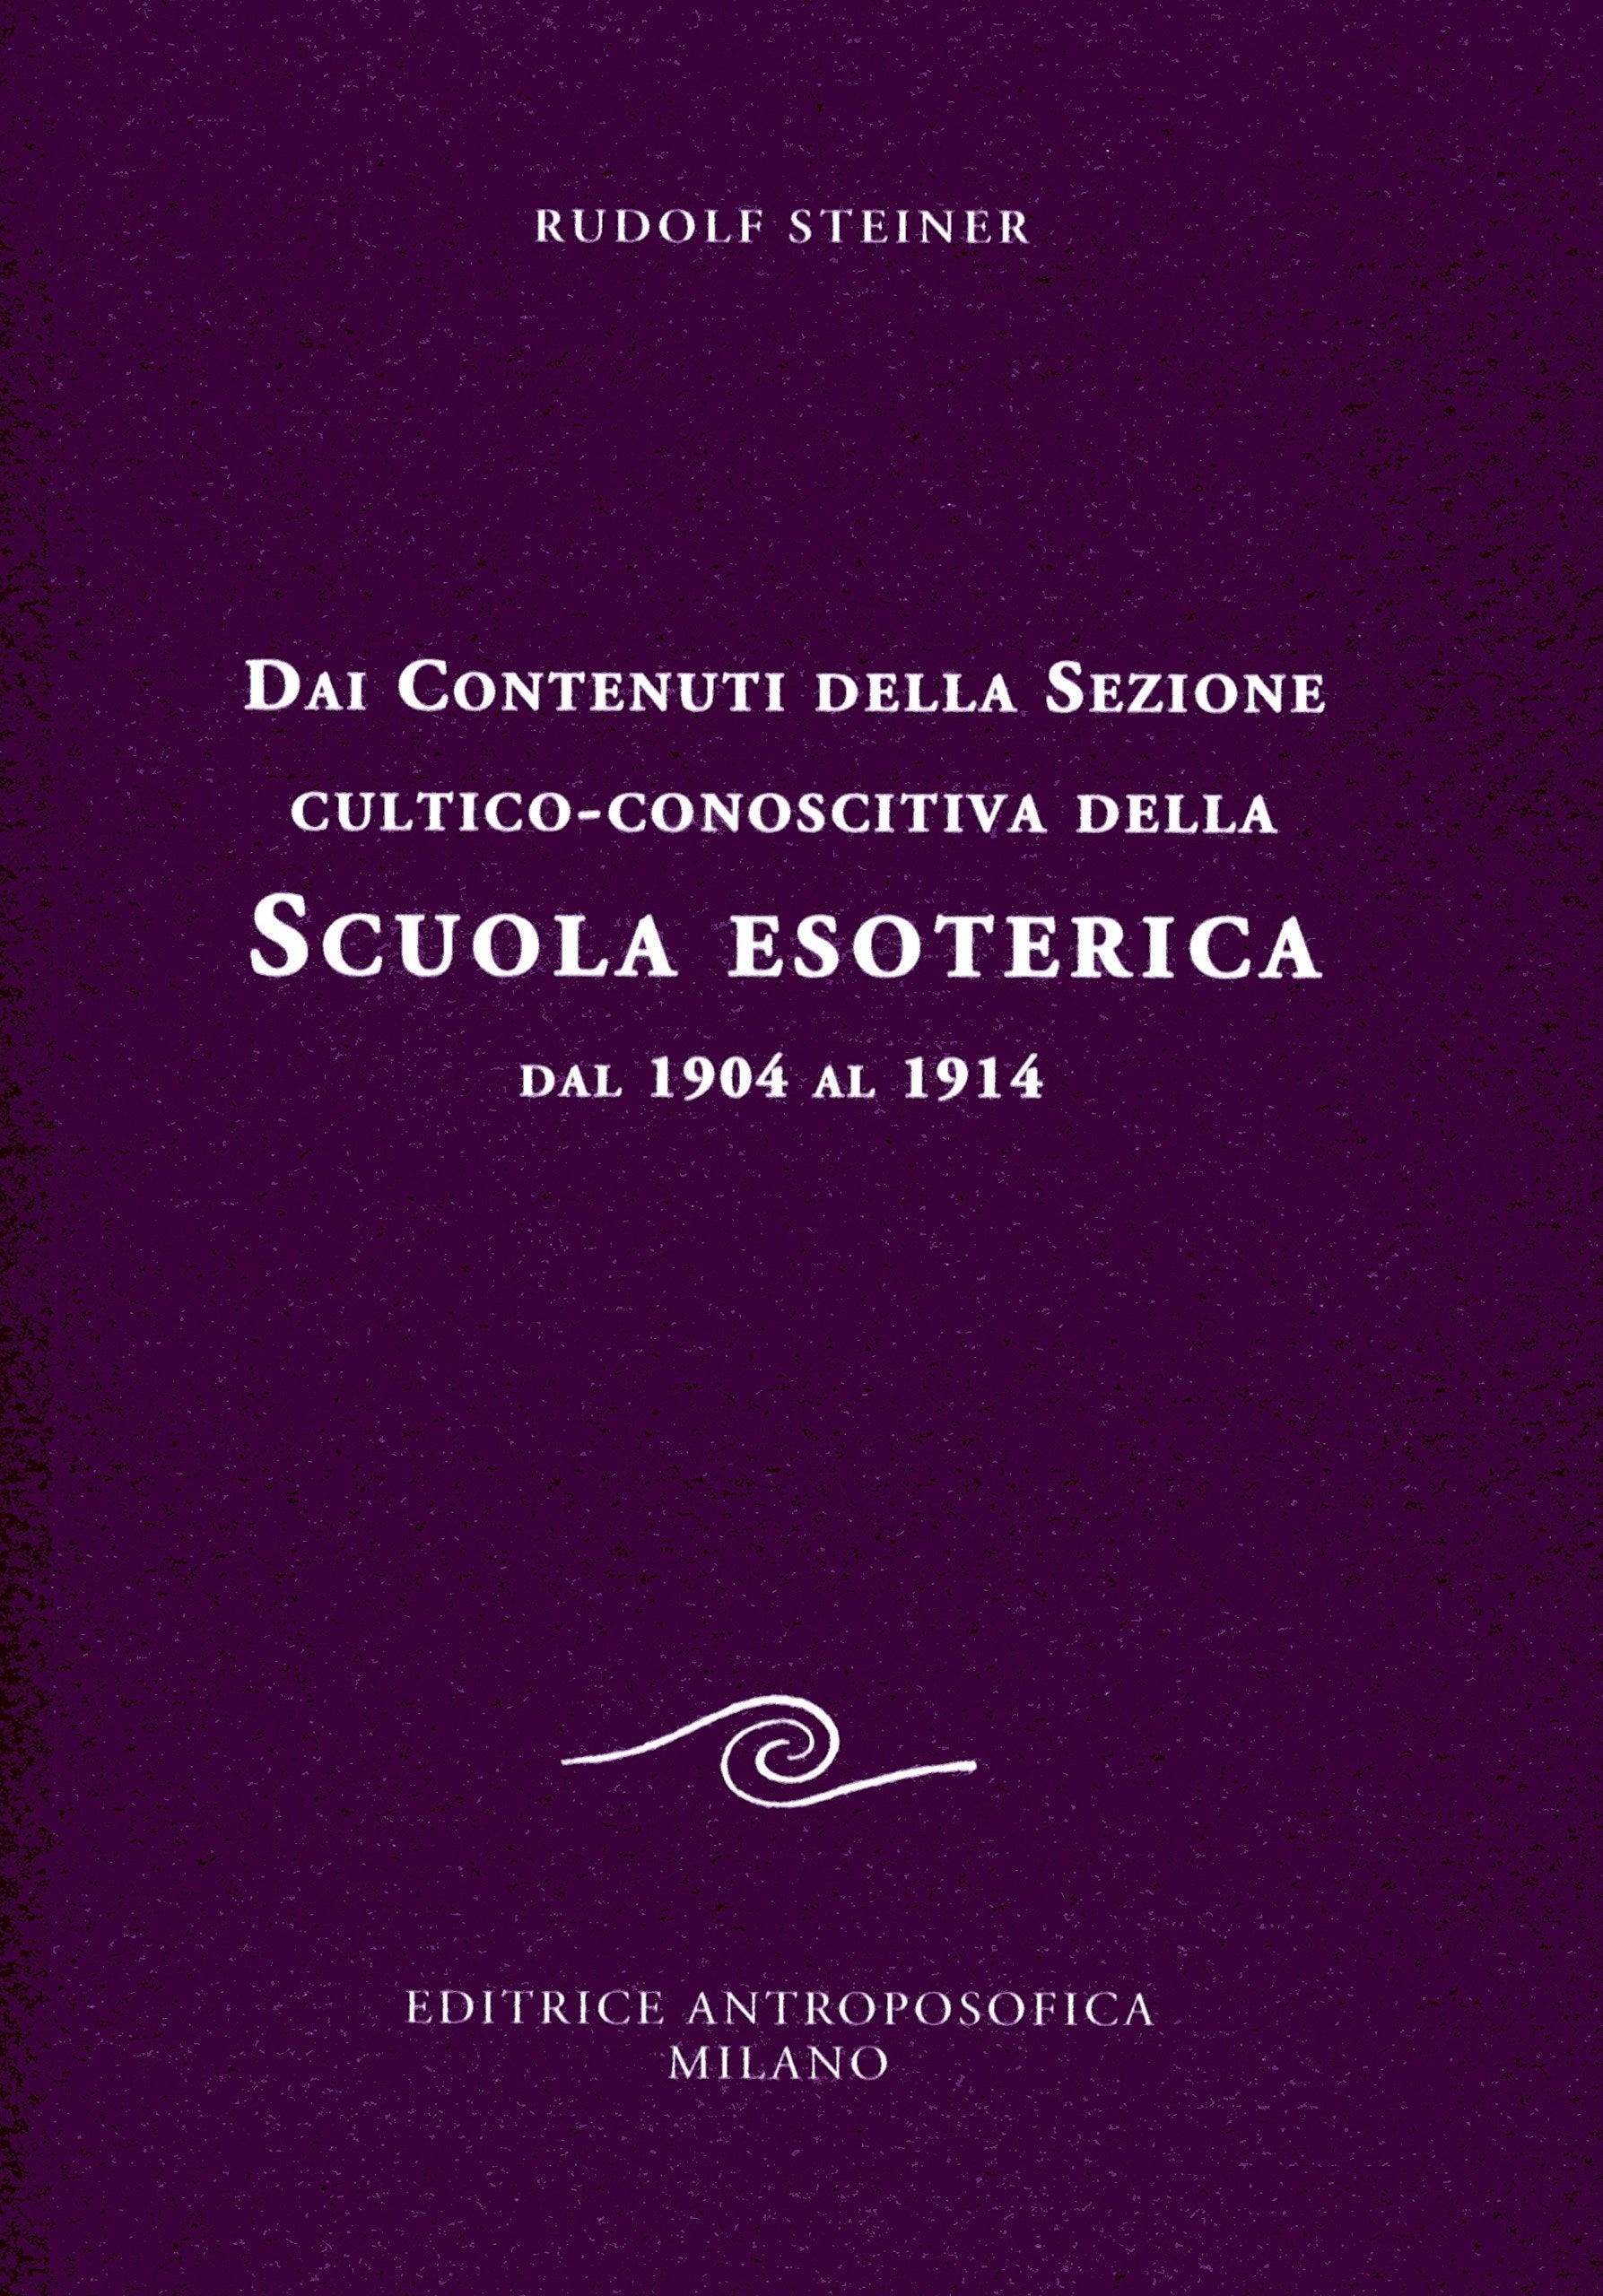 LIBRO "DAI CONTENUTI DELLA SEZIONE CULTICO-CONOSCITIVA DELLA SCUOLA ESOTERICA. DAL 1904 AL 1914" - Rudolf Steiner